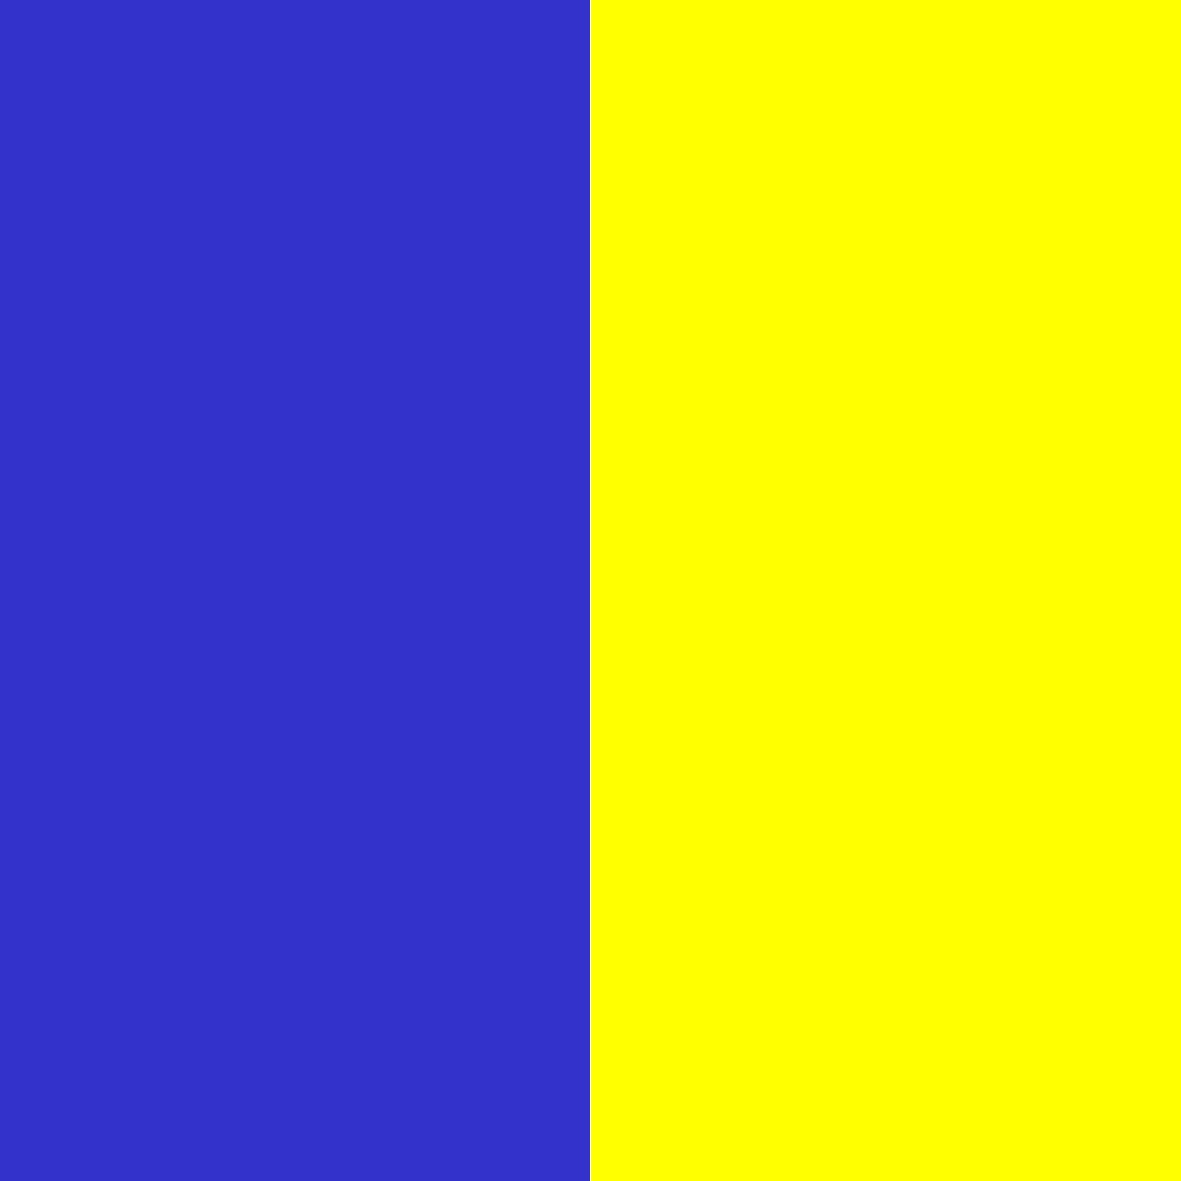 ярко-синий/лимонный_3333CC/FFFF00